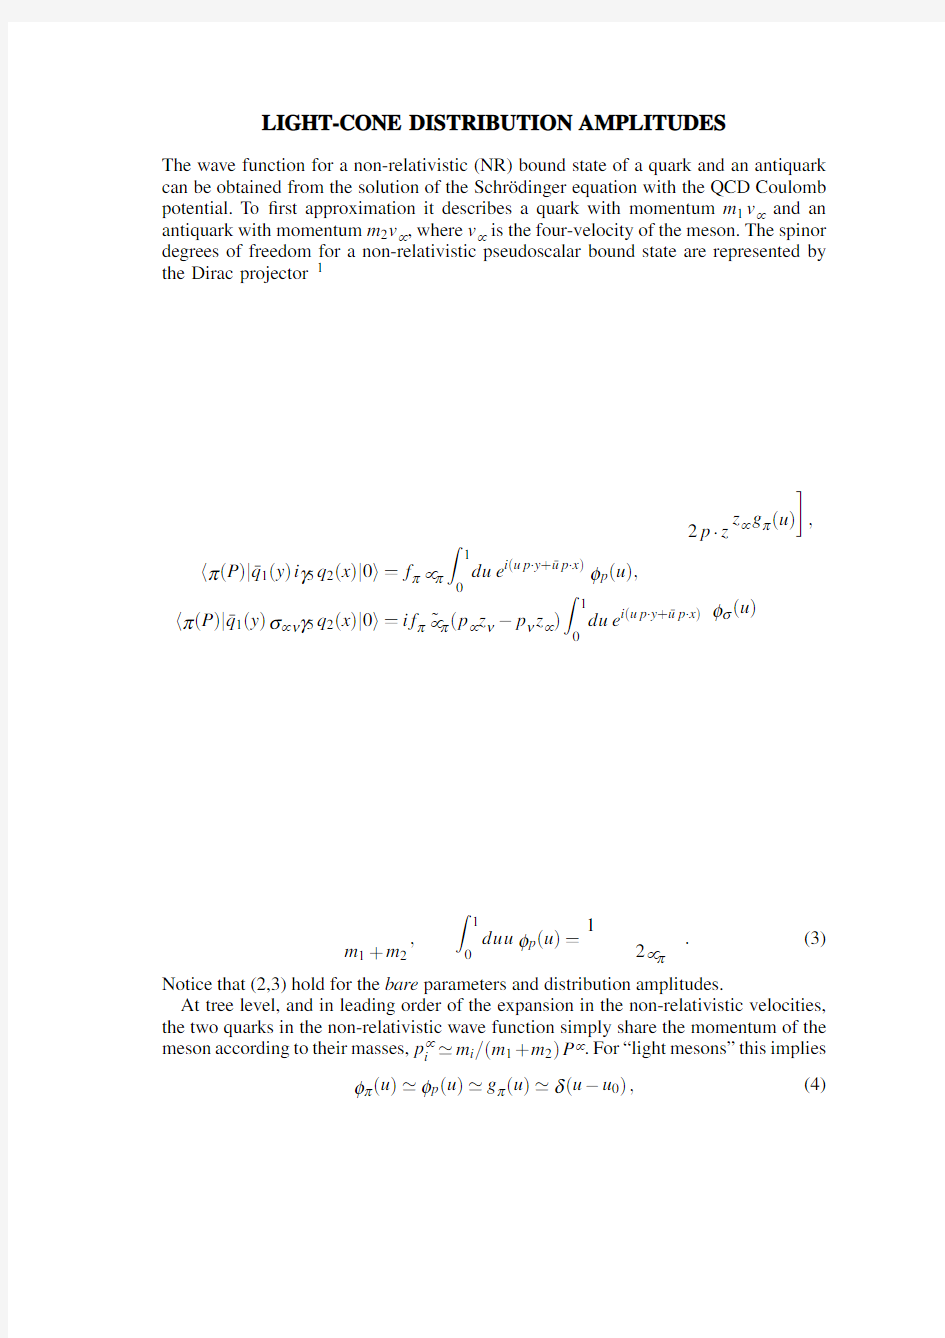 Light-Cone Distribution Amplitudes for Non-Relativistic Bound States